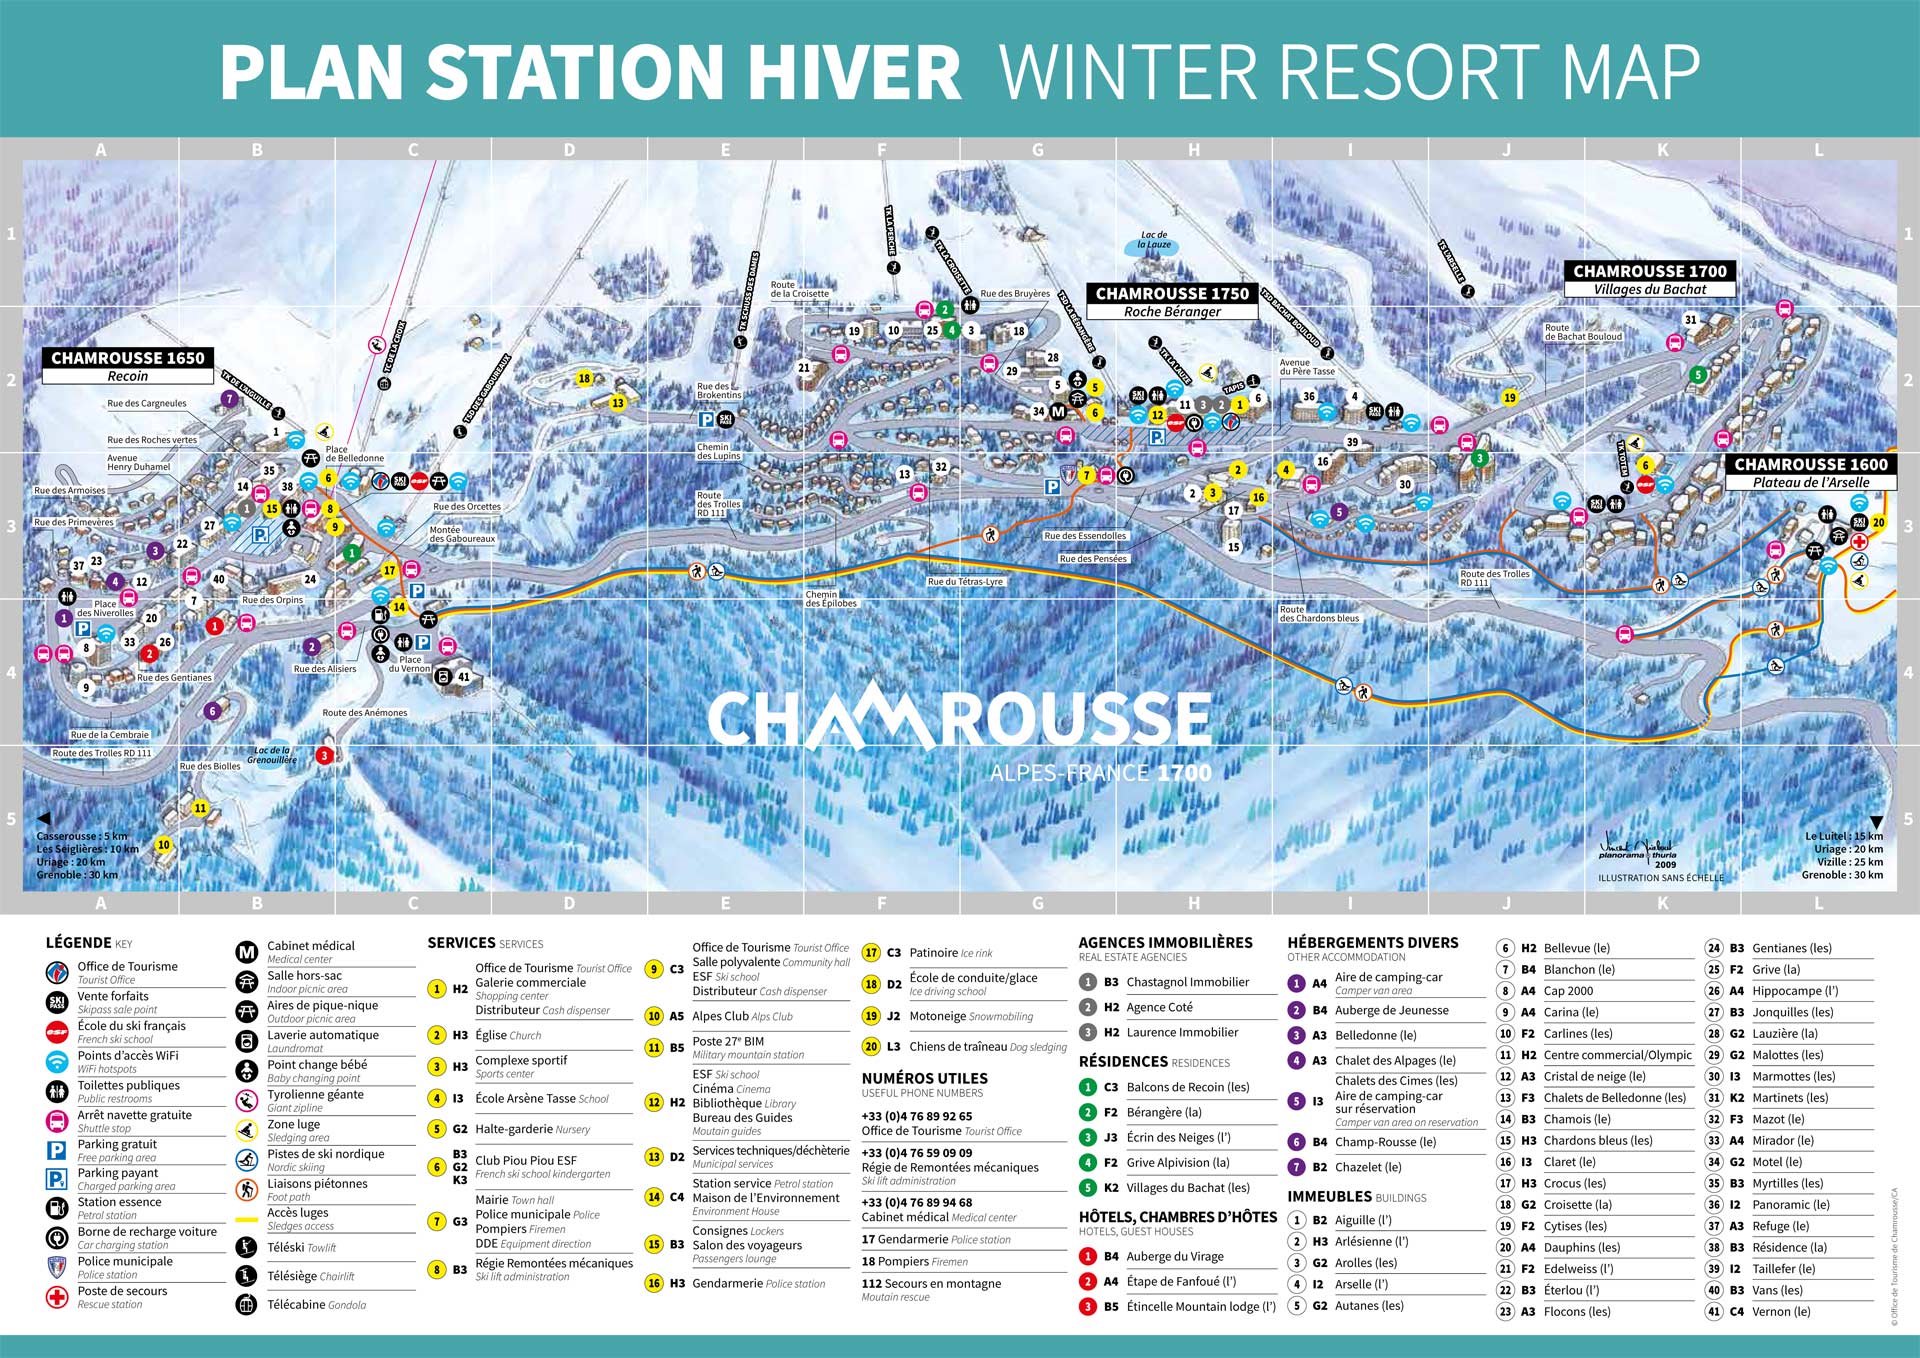 Chamrousse resort map winter mountain ski resort grenoble isere lyon rhone french alps france - © CA - OT Chamrousse / Kaliblue